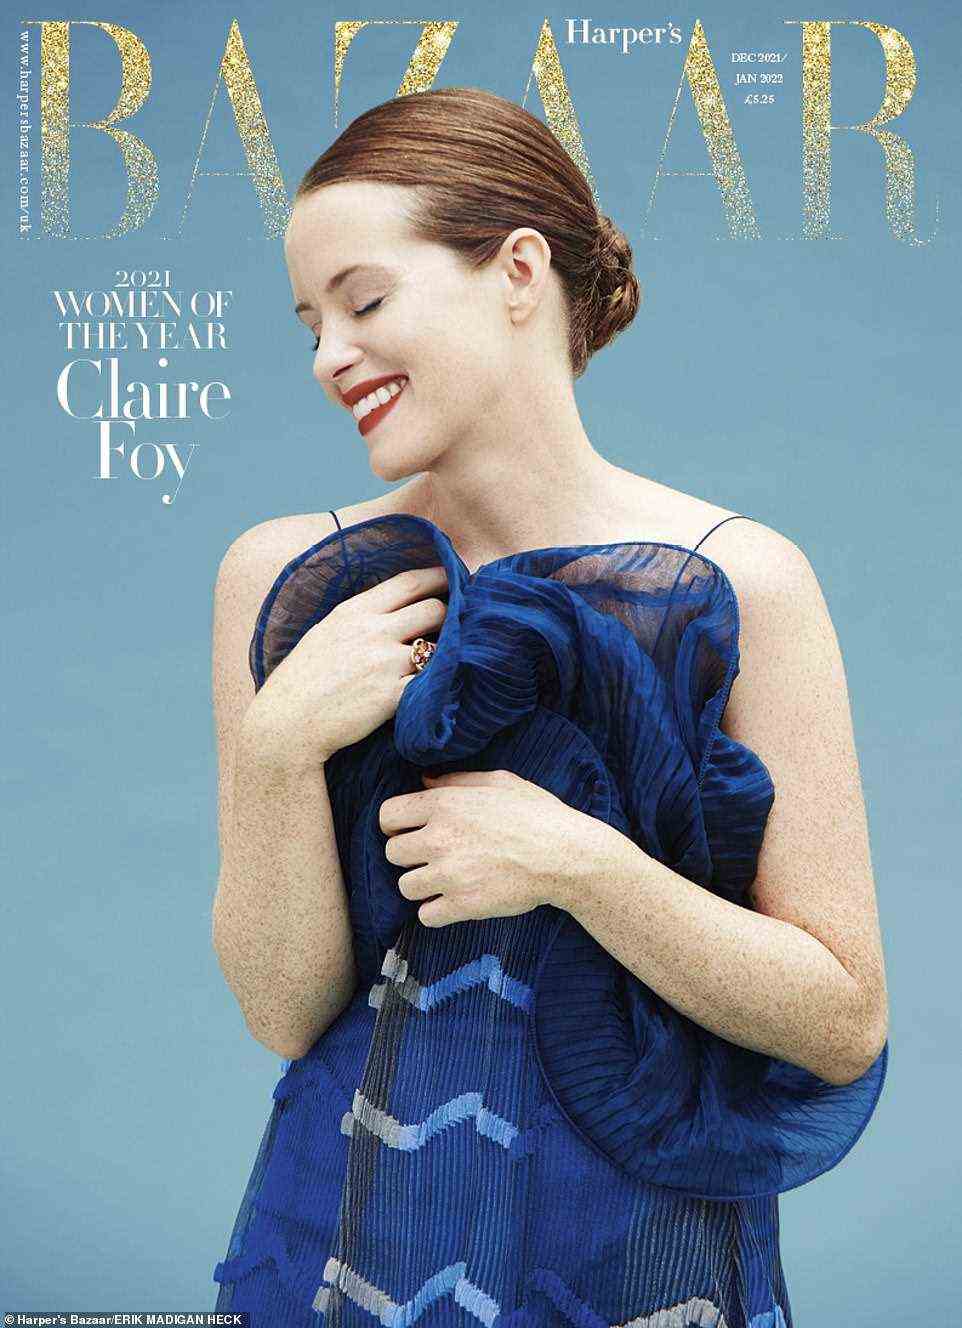 Auszeichnung: Claire wird dieses Jahr den Schauspielerinpreis bei den Harper's Bazaar Women of the Year Awards gewinnen und lächelte schüchtern auf dem Cover, während sie ein atemberaubendes blaues Kleid trug